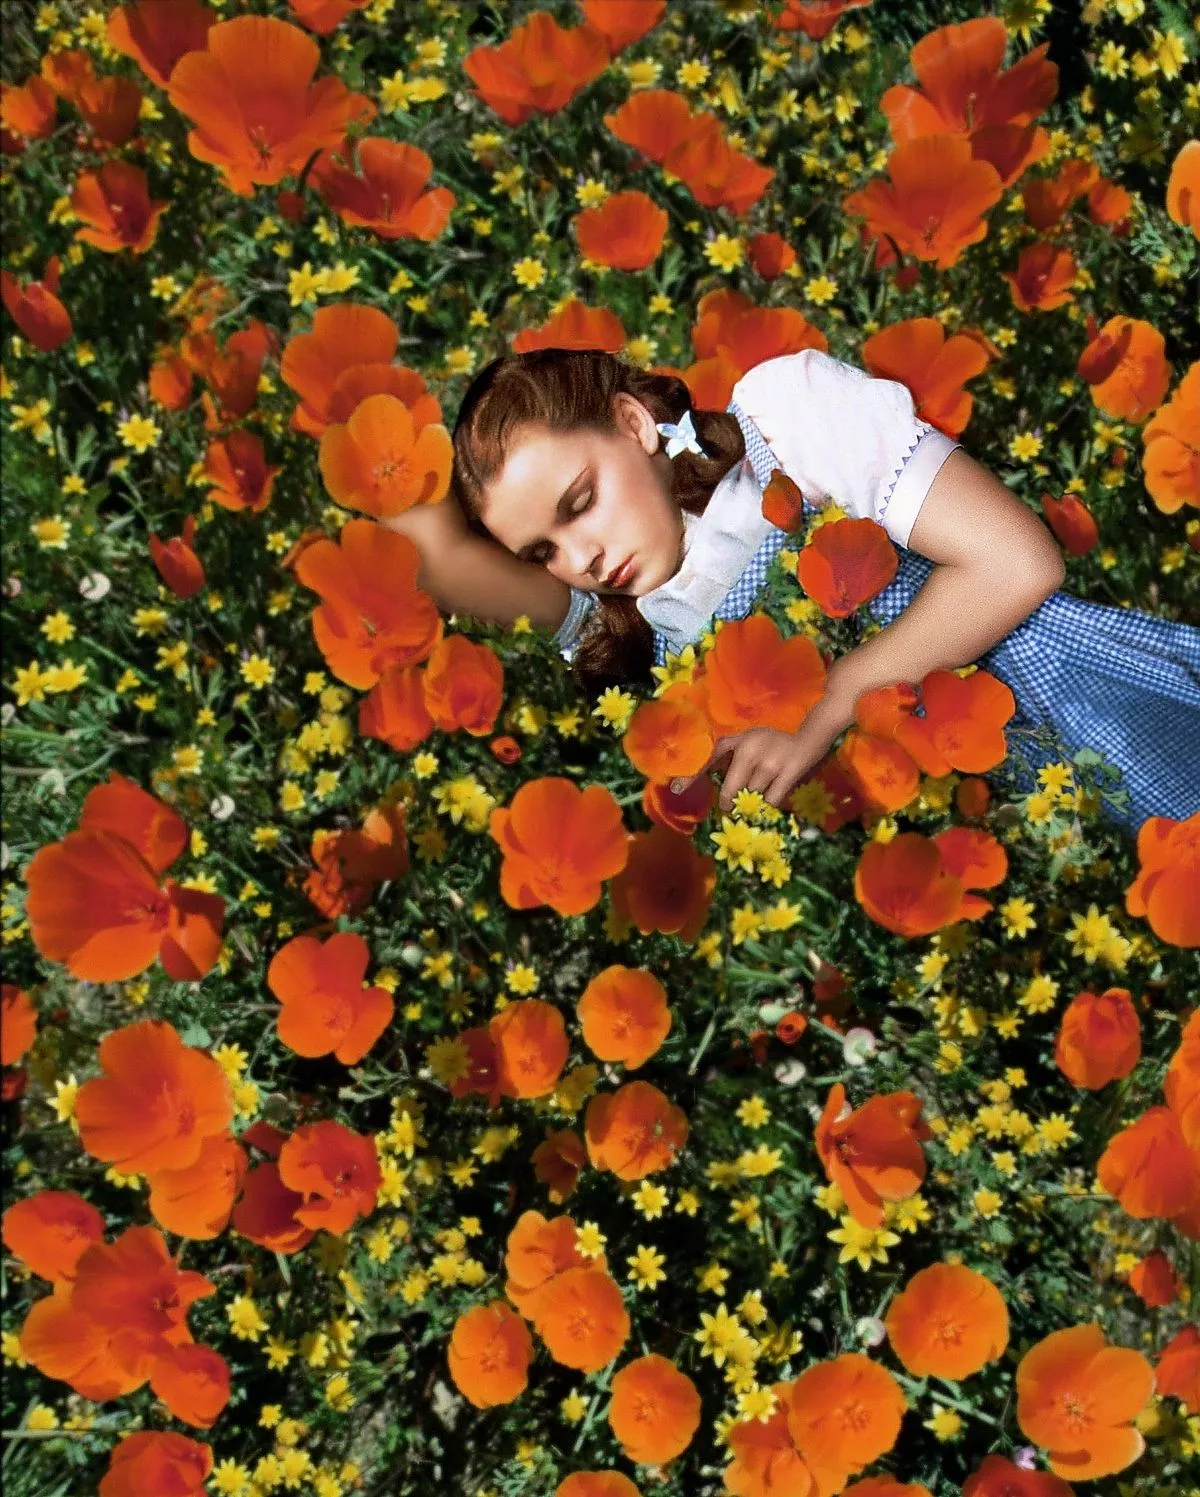 Джуди Гарленд, спящая в поле красных маков и желтых цветов